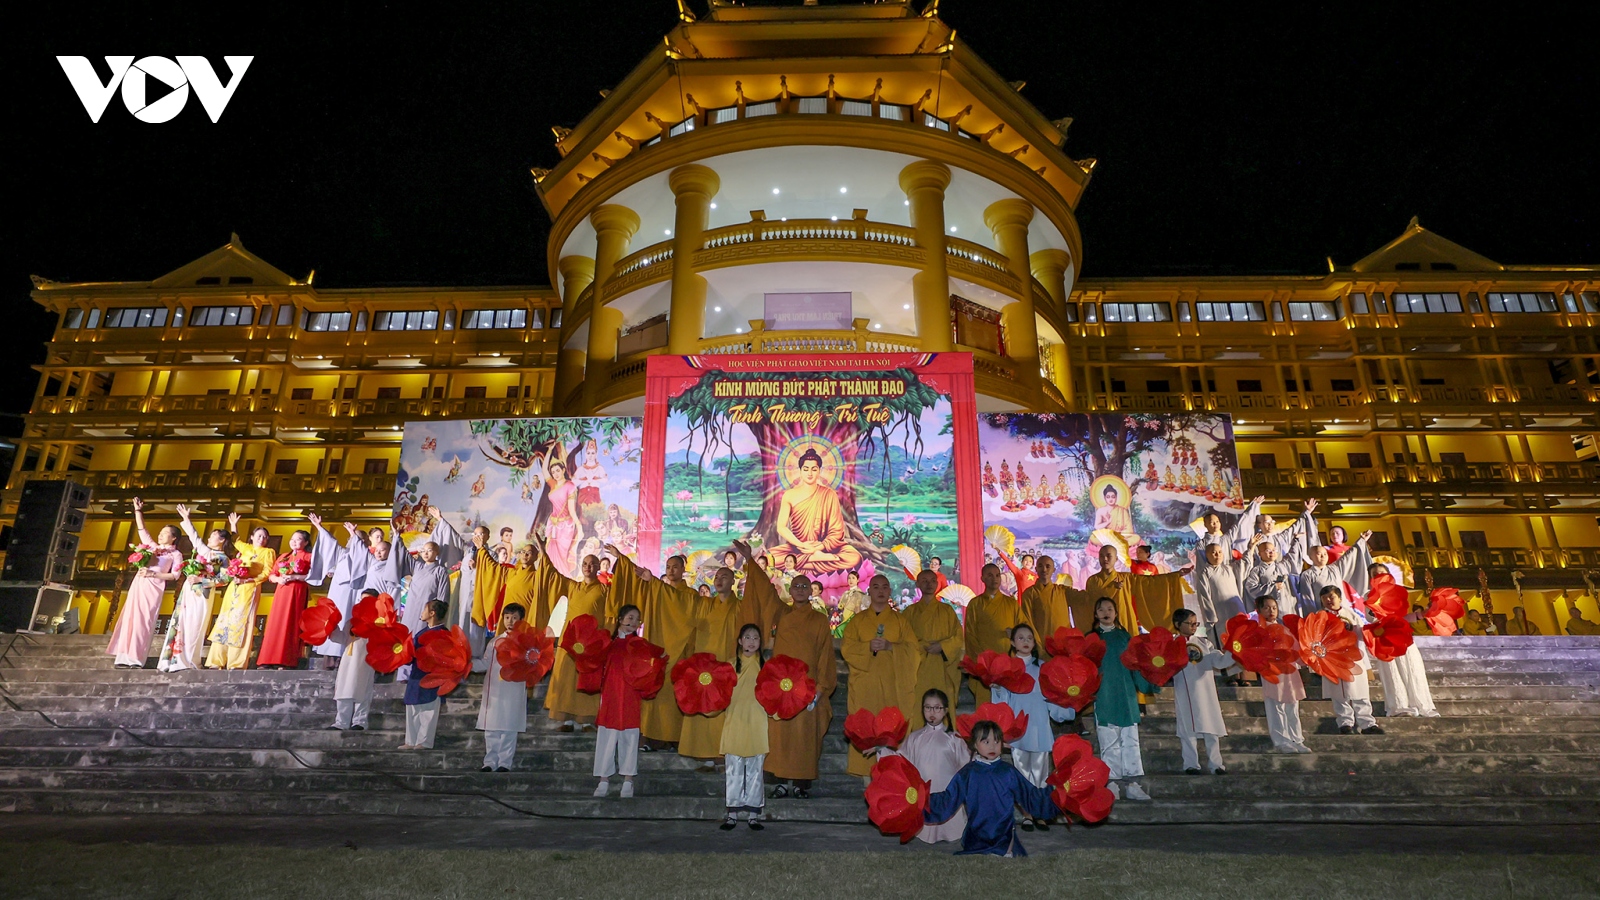 Đại lễ kỷ niệm ngày Phật thành đạo tại Học viện Phật giáo Việt Nam